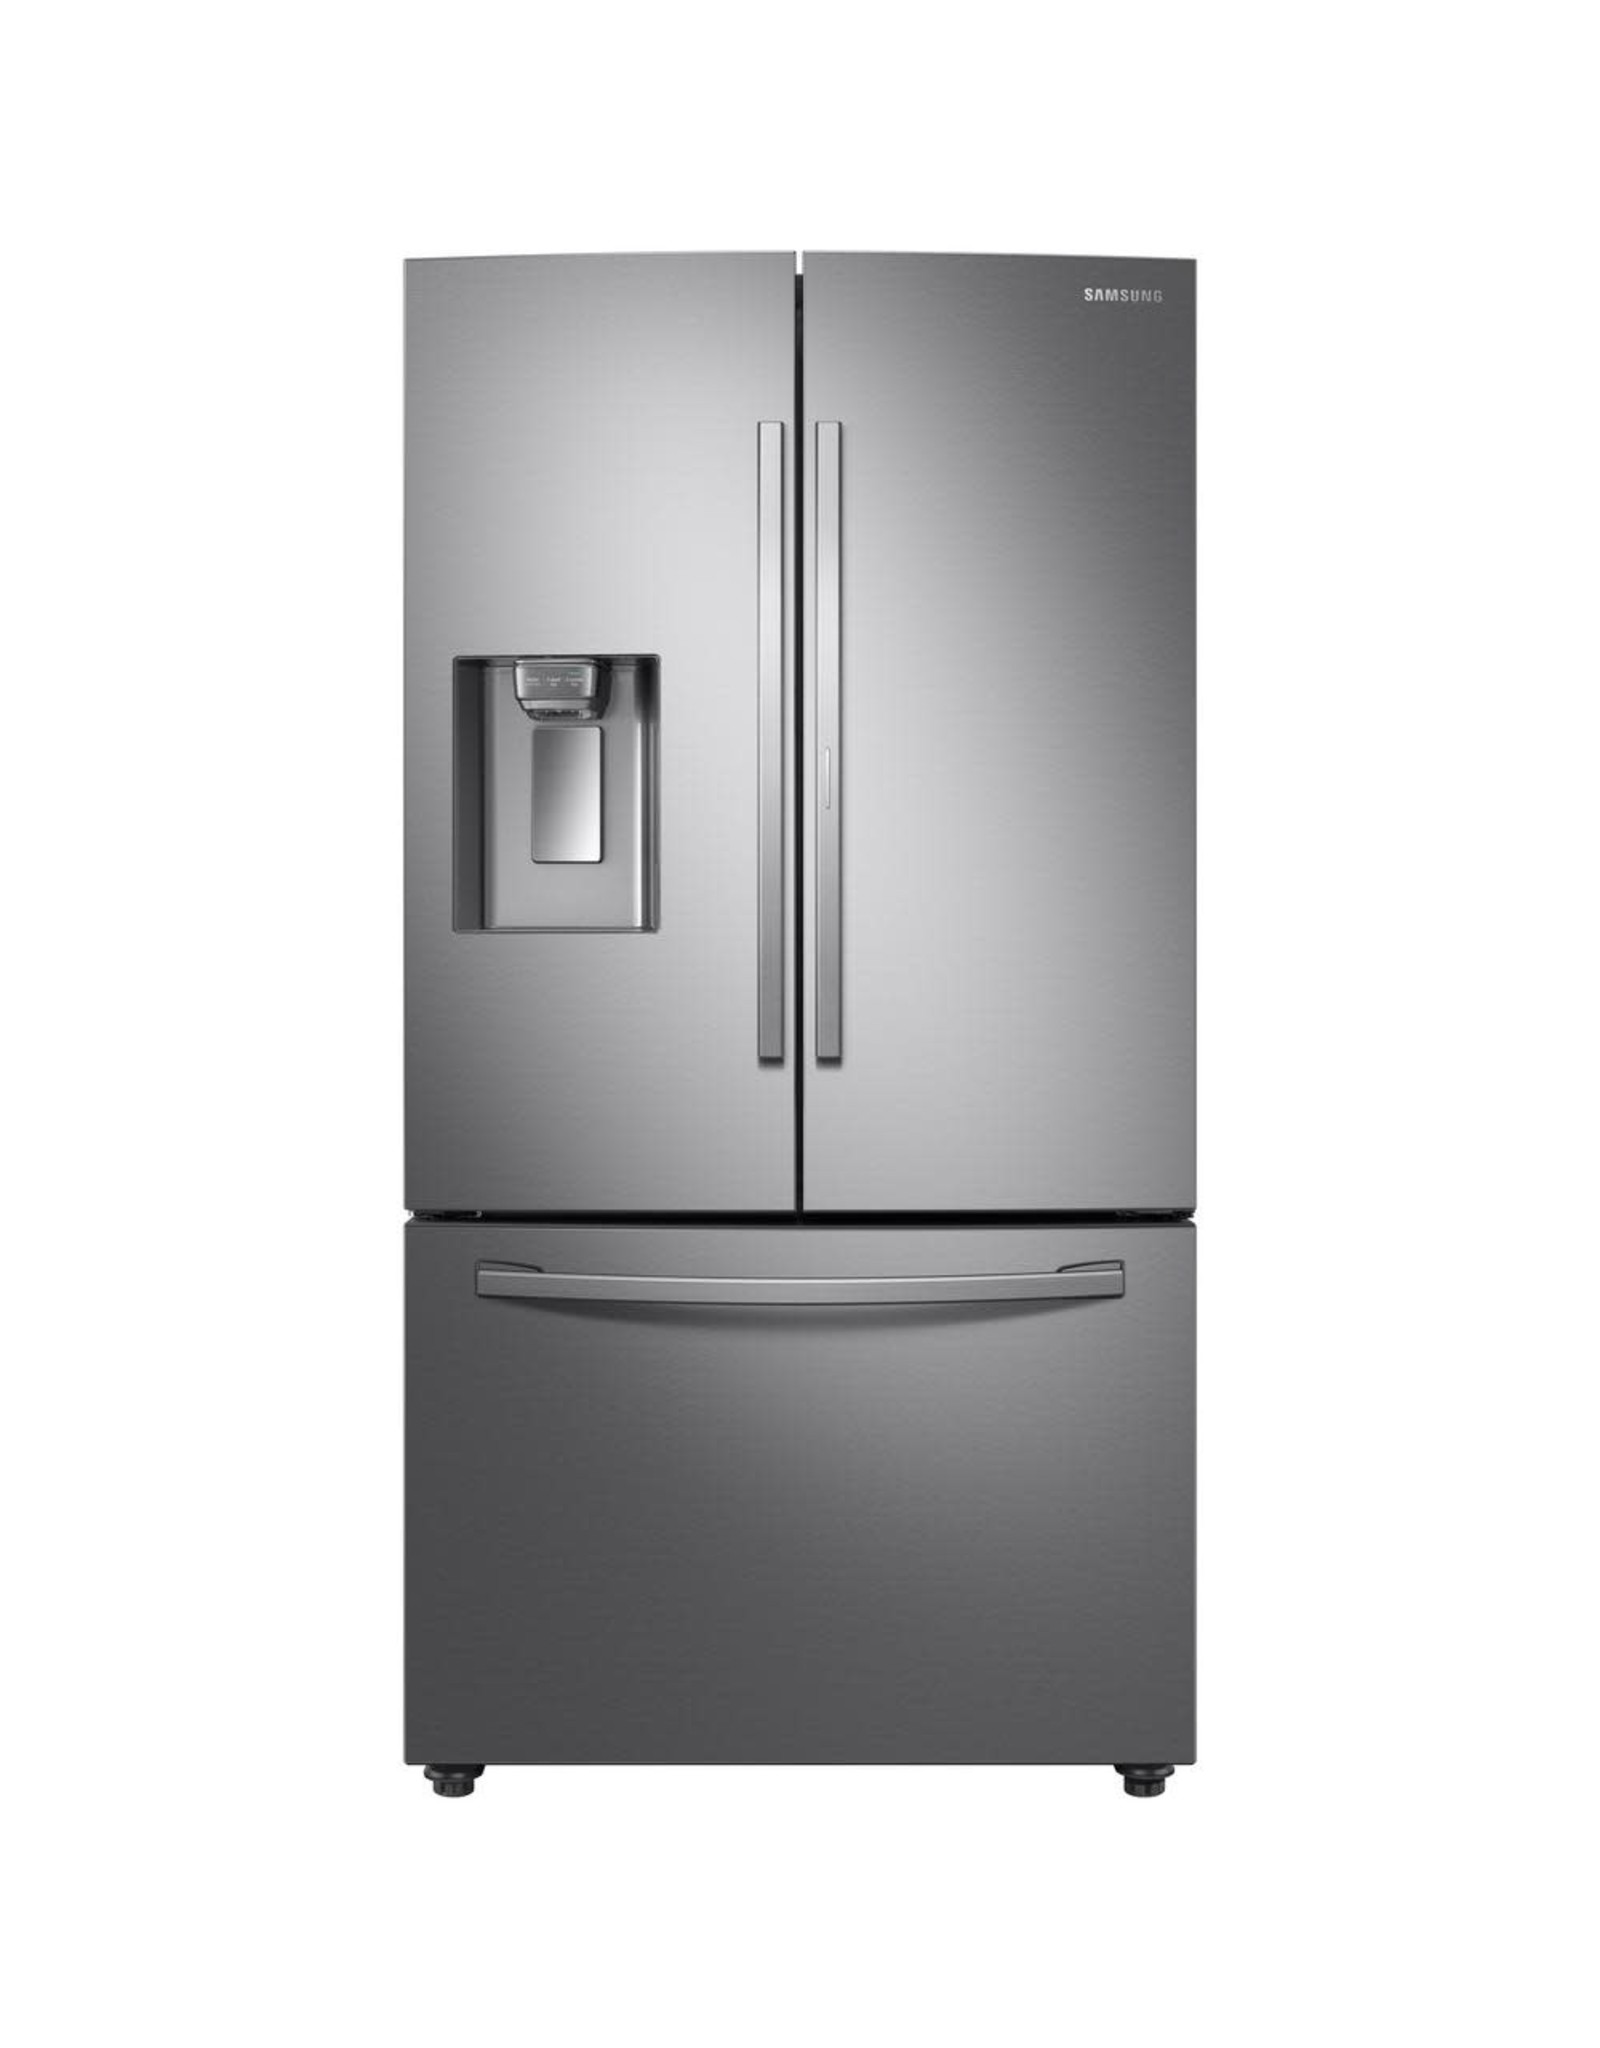 RF28R6201SR Samsung 28 cu. ft. 3-Door French Door Refrigerator in Stainless Steel with Food Showcase Door